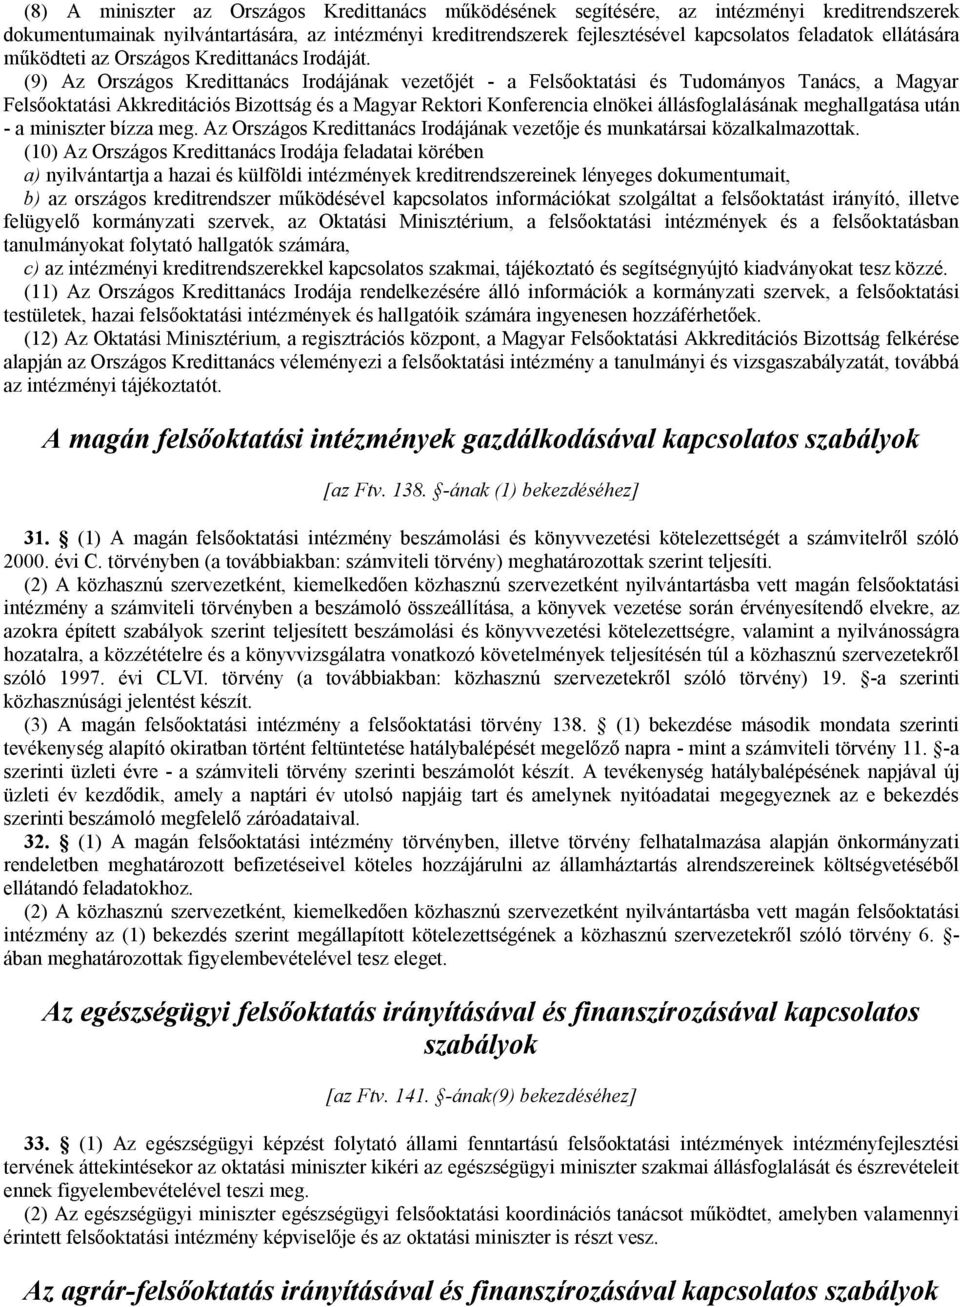 (9) Az Országos Kredittanács Irodájának vezetőjét - a Felsőoktatási és Tudományos Tanács, a Magyar Felsőoktatási Akkreditációs Bizottság és a Magyar Rektori Konferencia elnökei állásfoglalásának